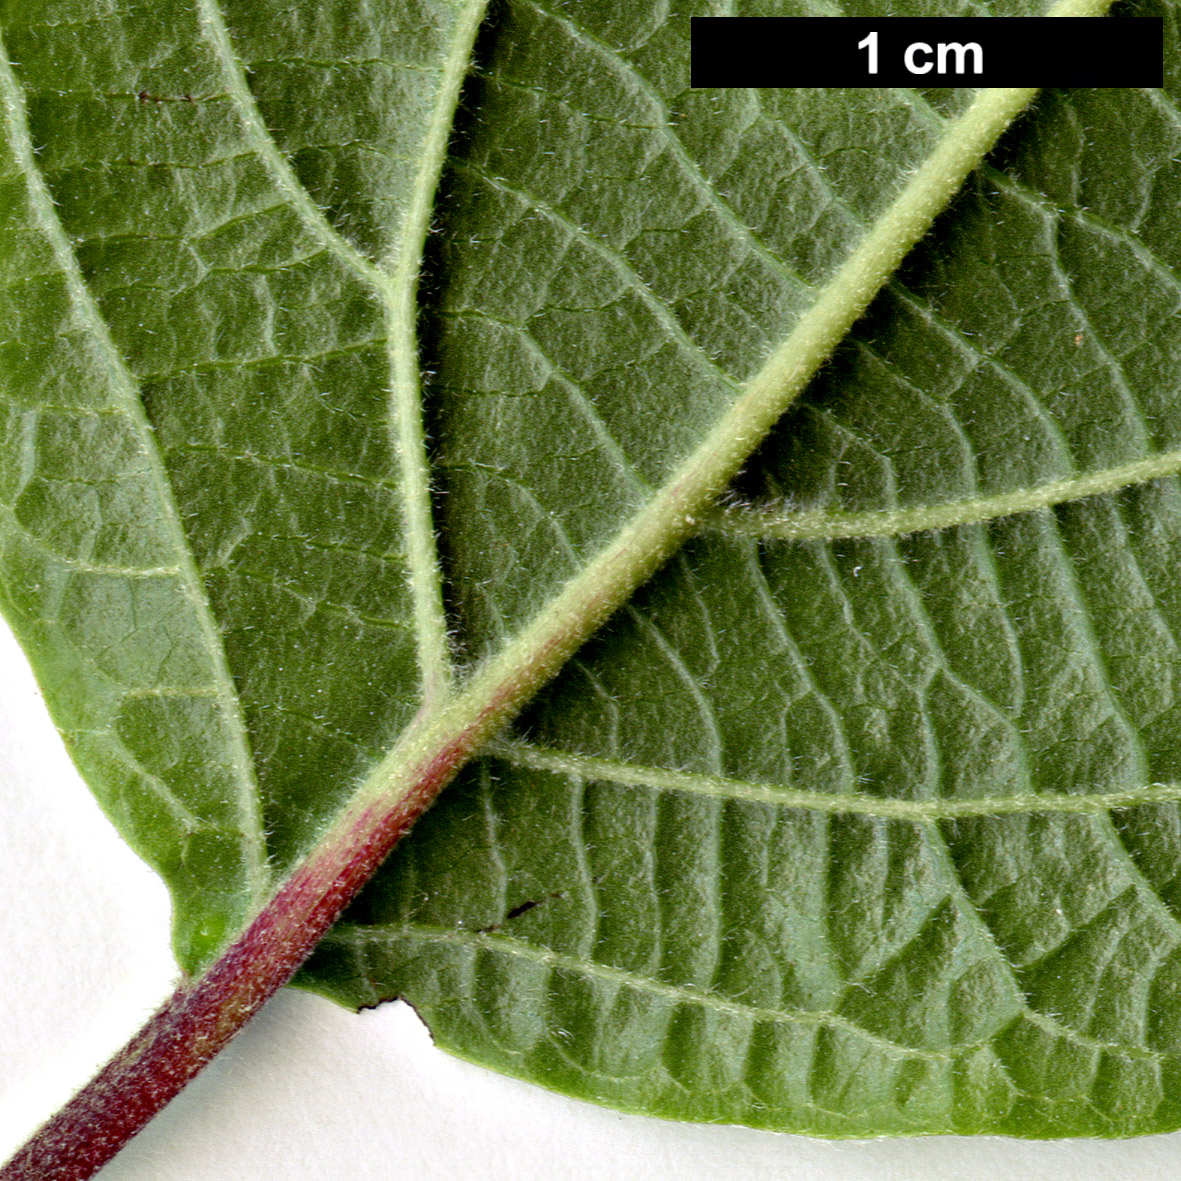 High resolution image: Family: Adoxaceae - Genus: Viburnum - Taxon: ovatifolium